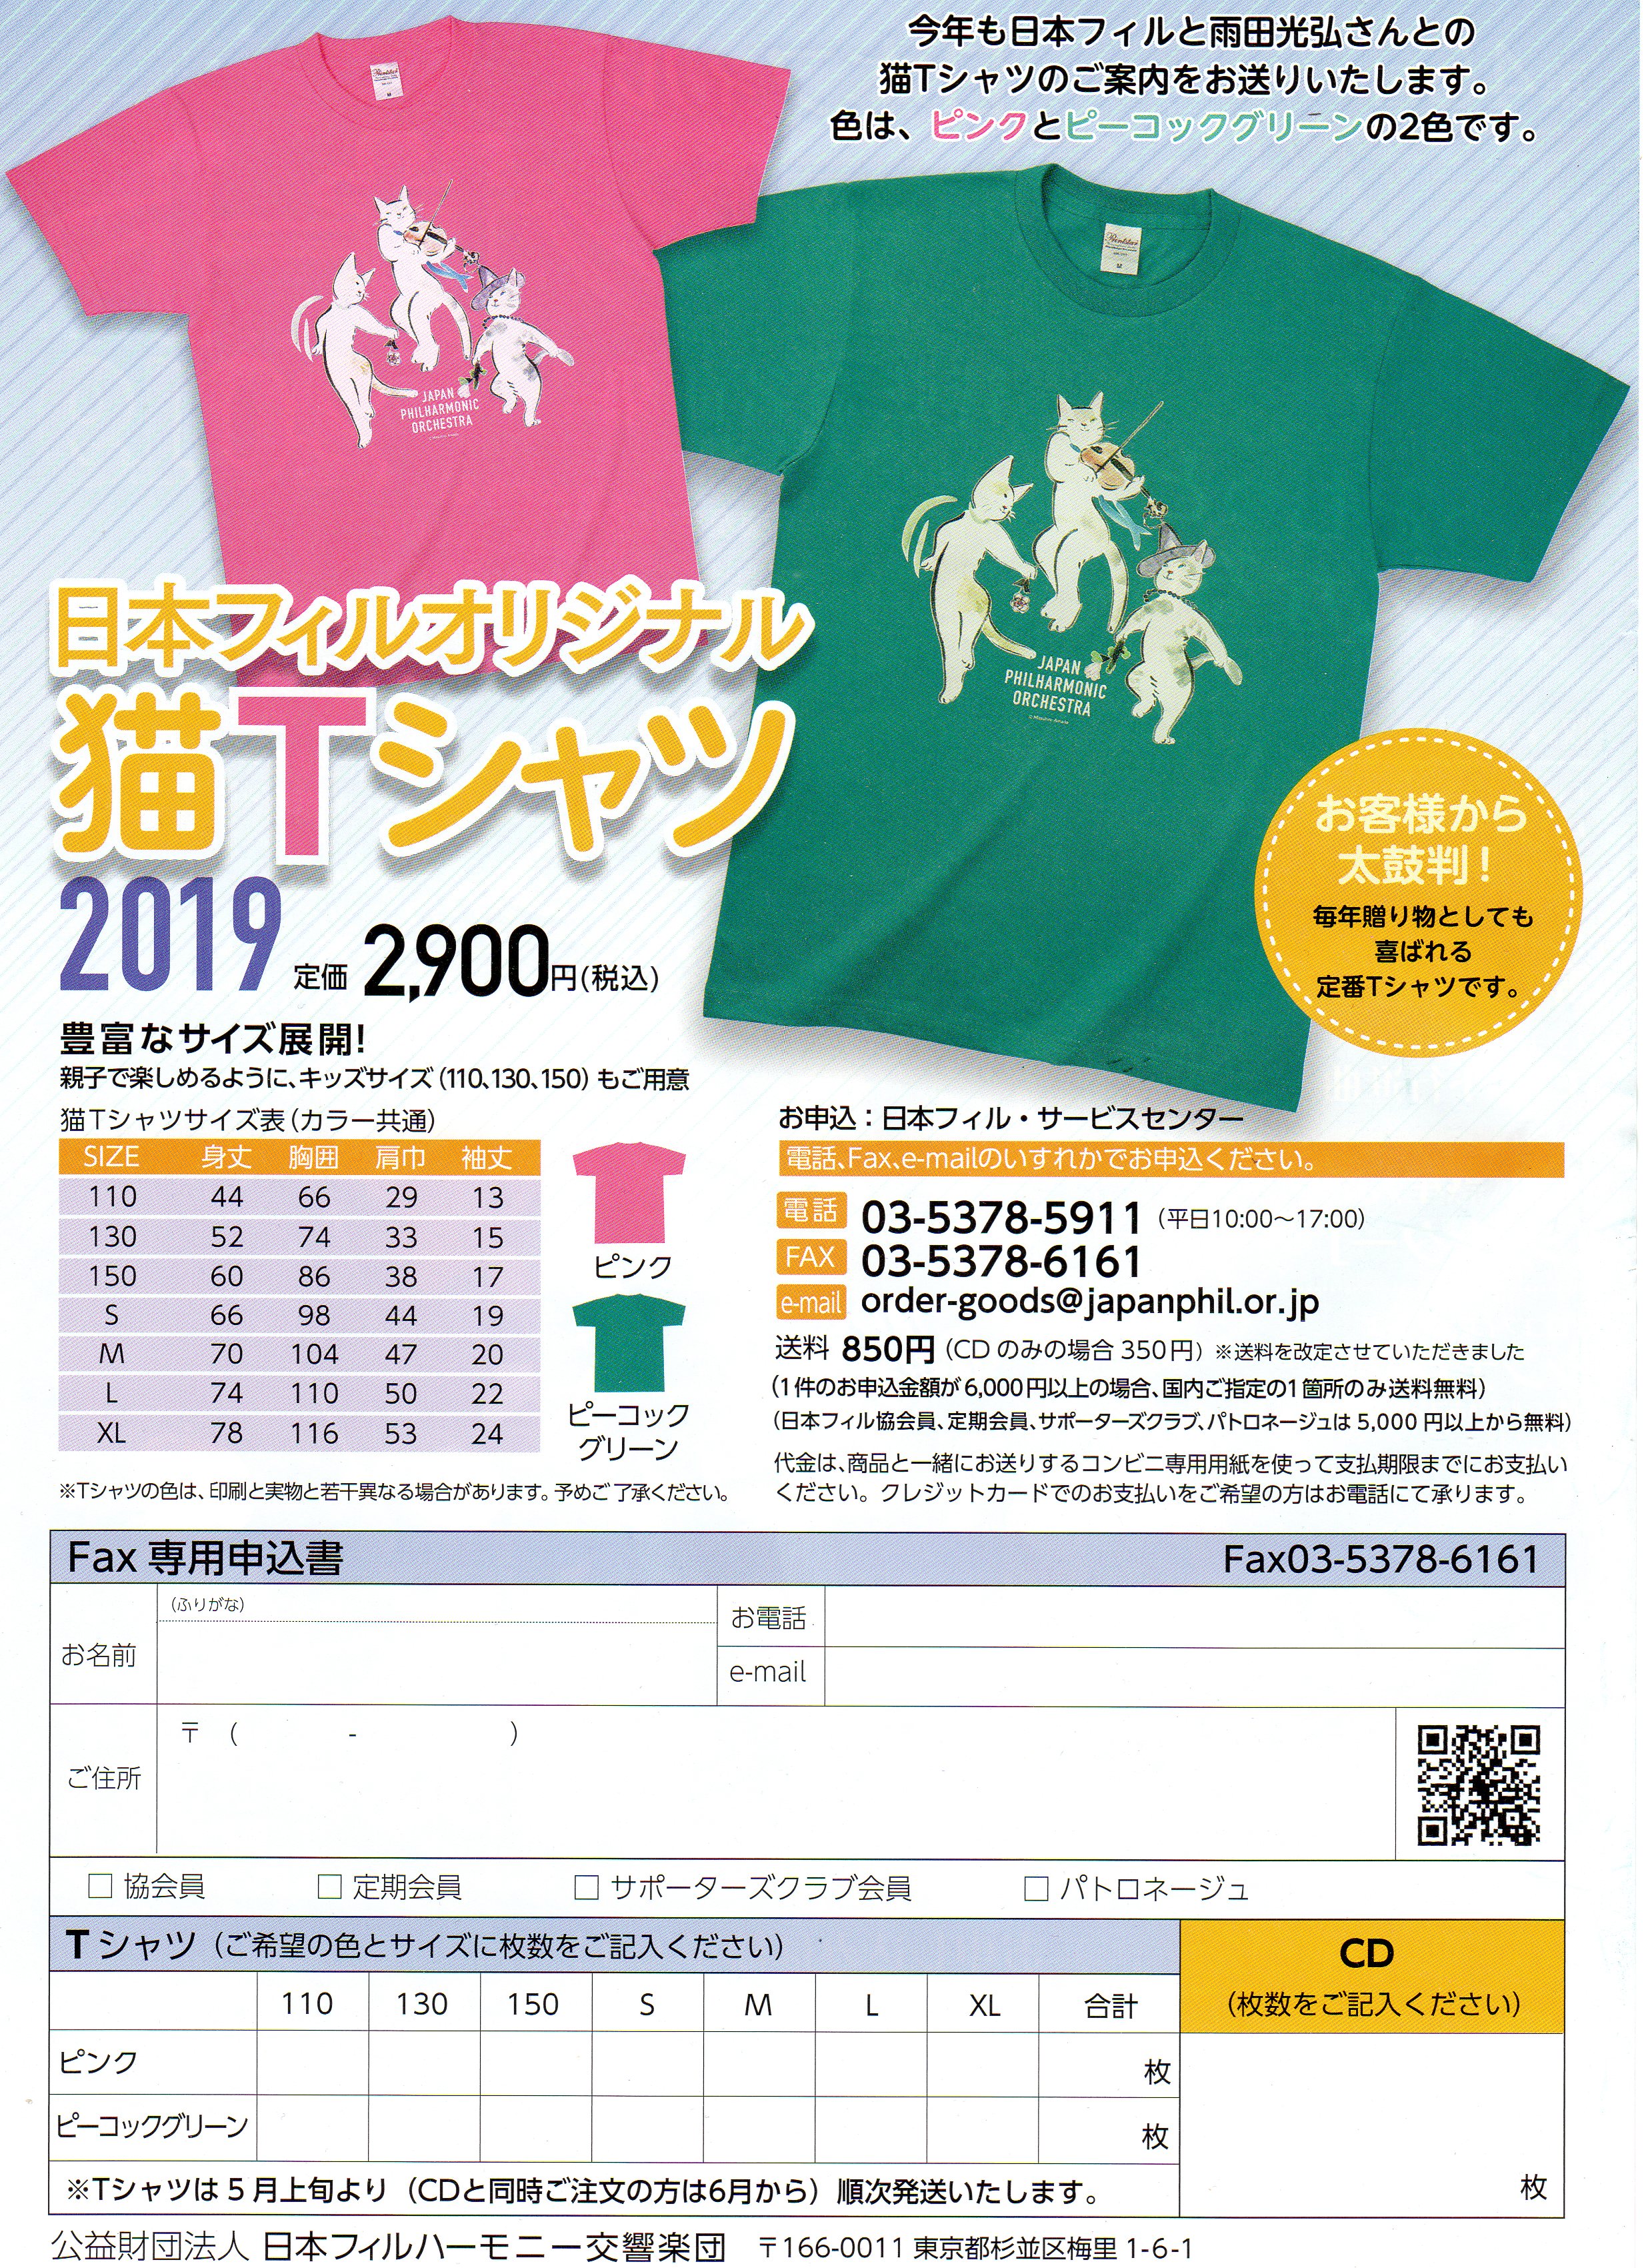  日本フィルオリジナルTシャツ2019